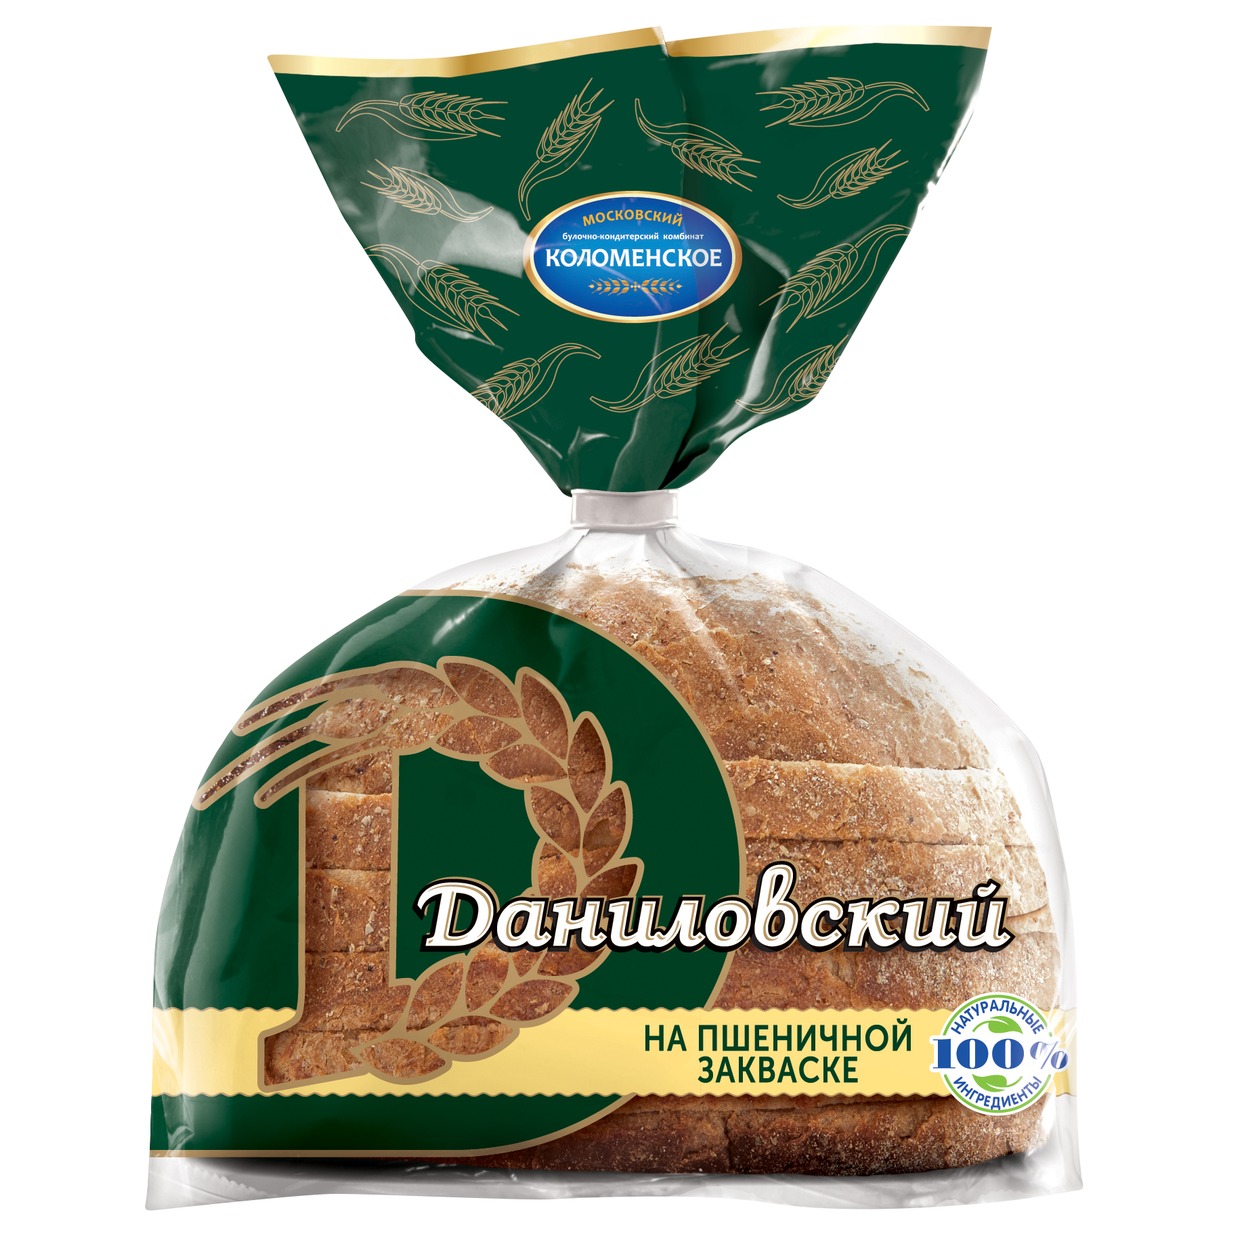 Хлеб Даниловский, Коломенское, 275 г по акции в Пятерочке